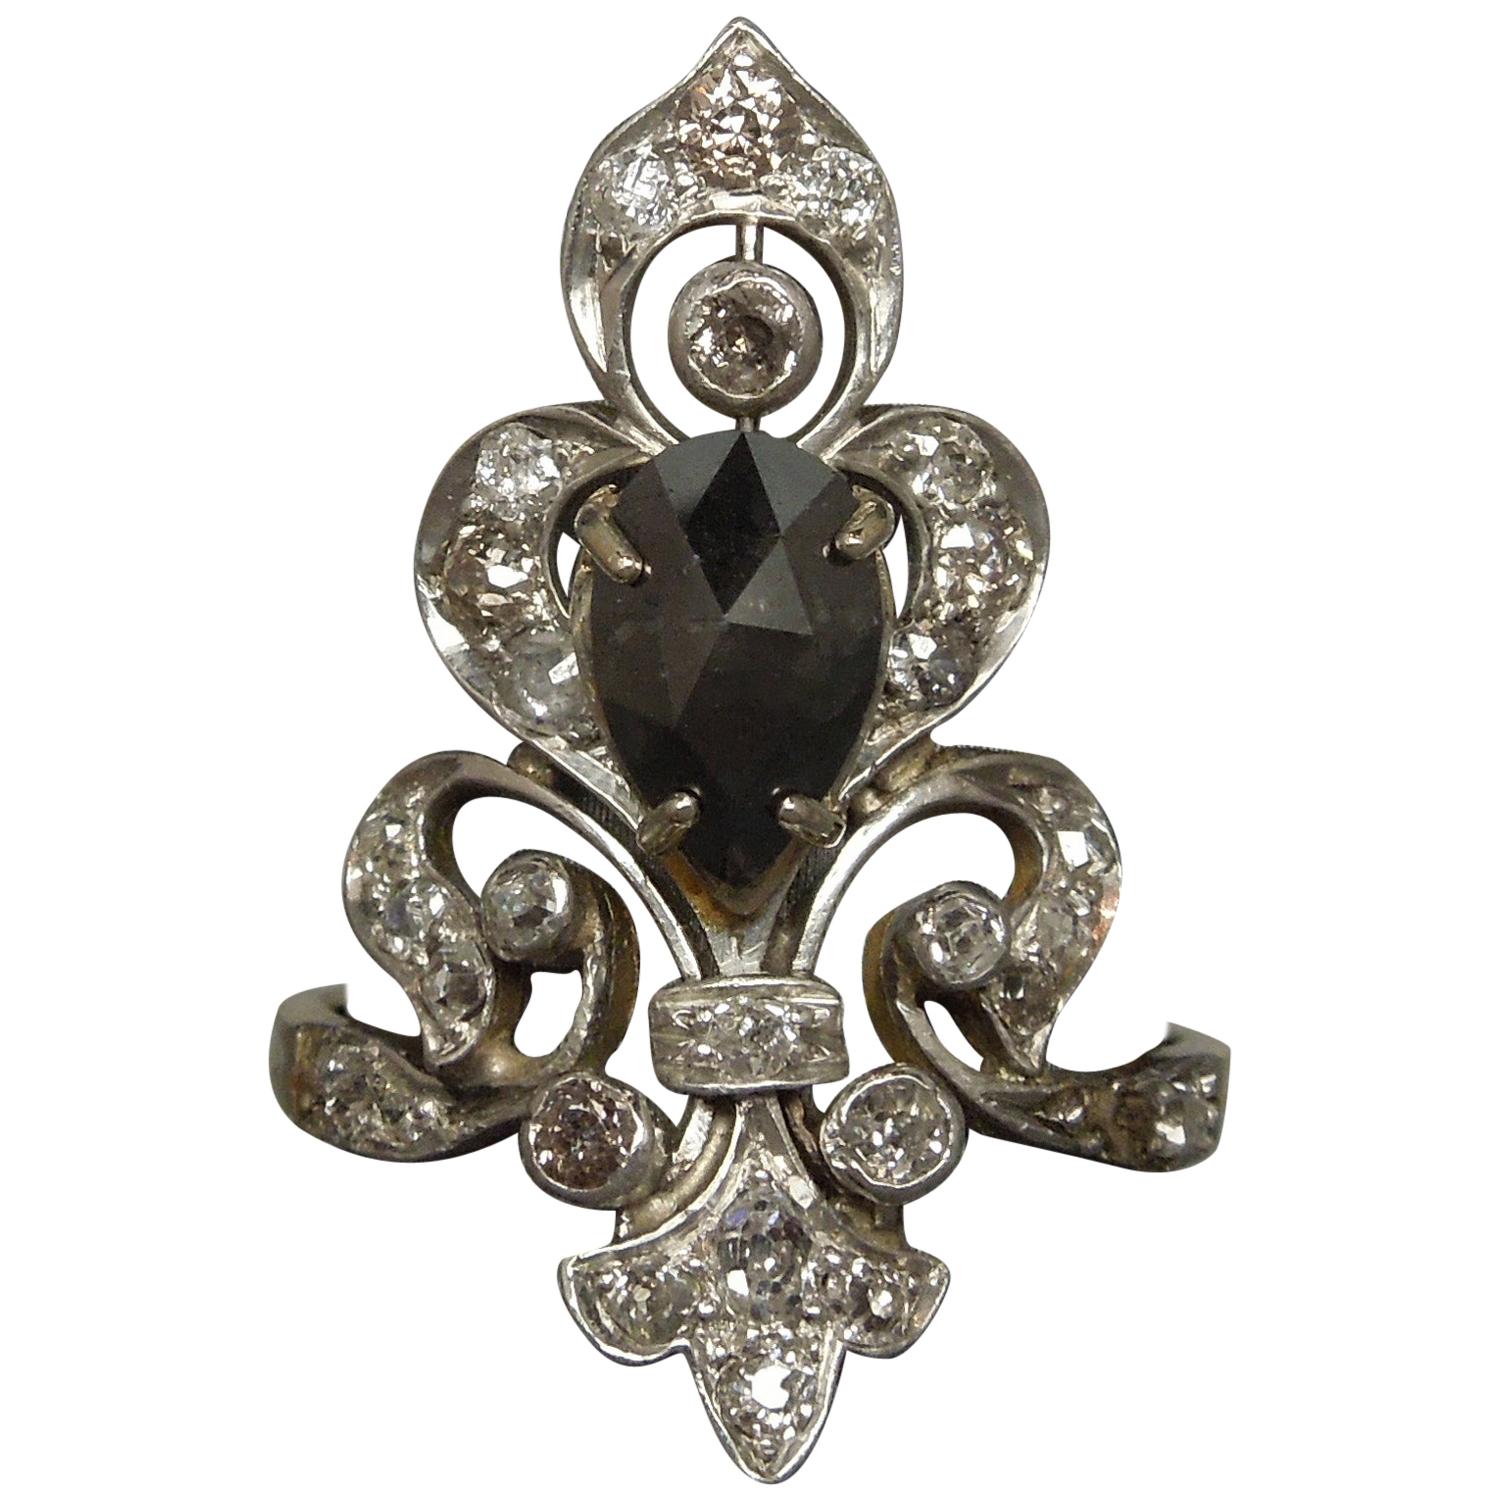 New Orleans Fleur de Lis Black and White Diamond Tiara Ring